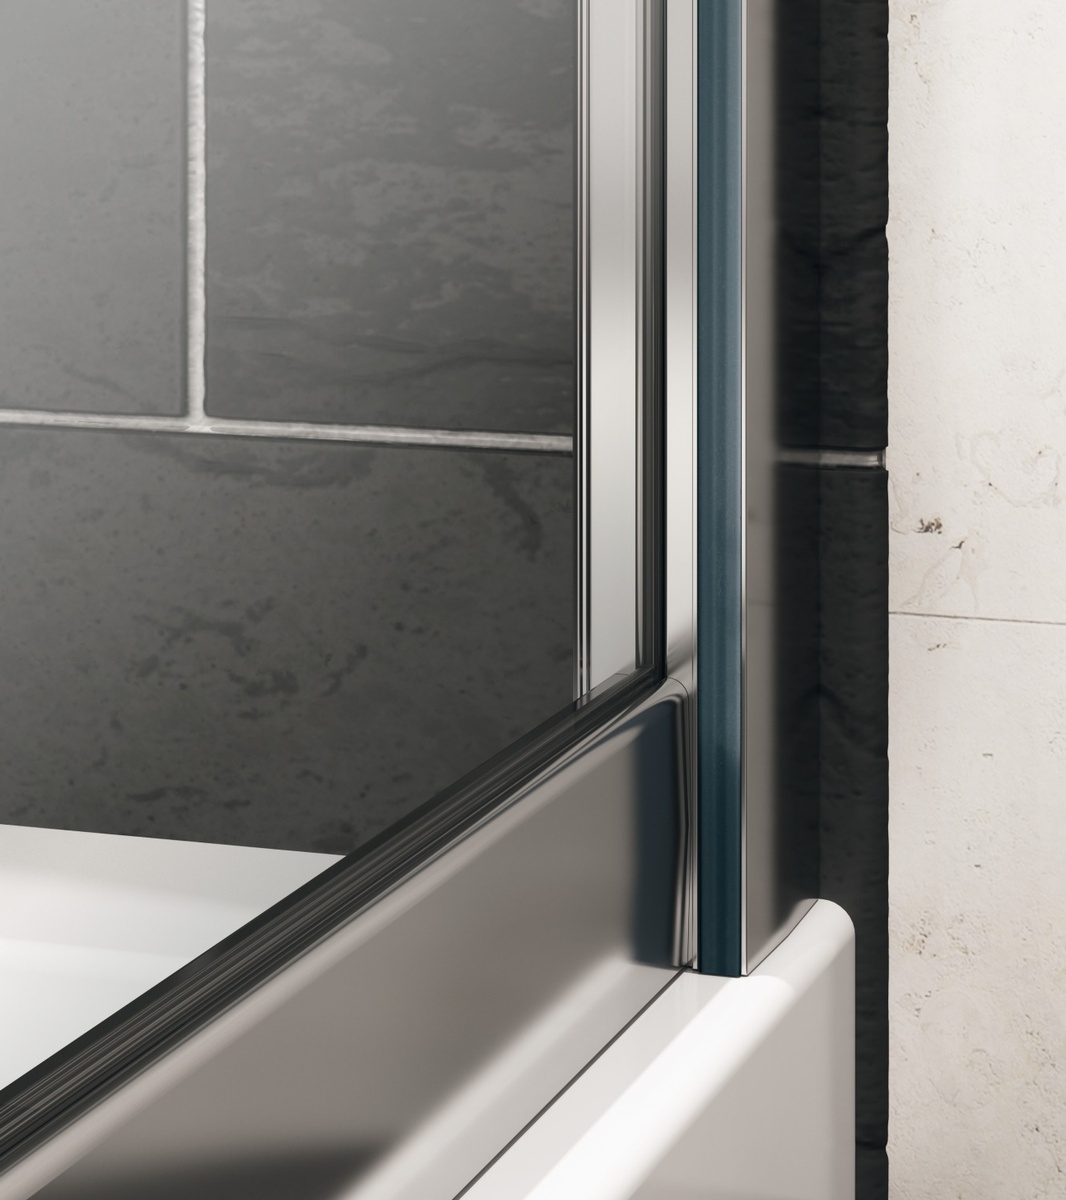 Двері скляні для душової ніші універсальні розпашні HUPPE X1 190x100см прозоре скло 6мм профіль хром 140705.069.322